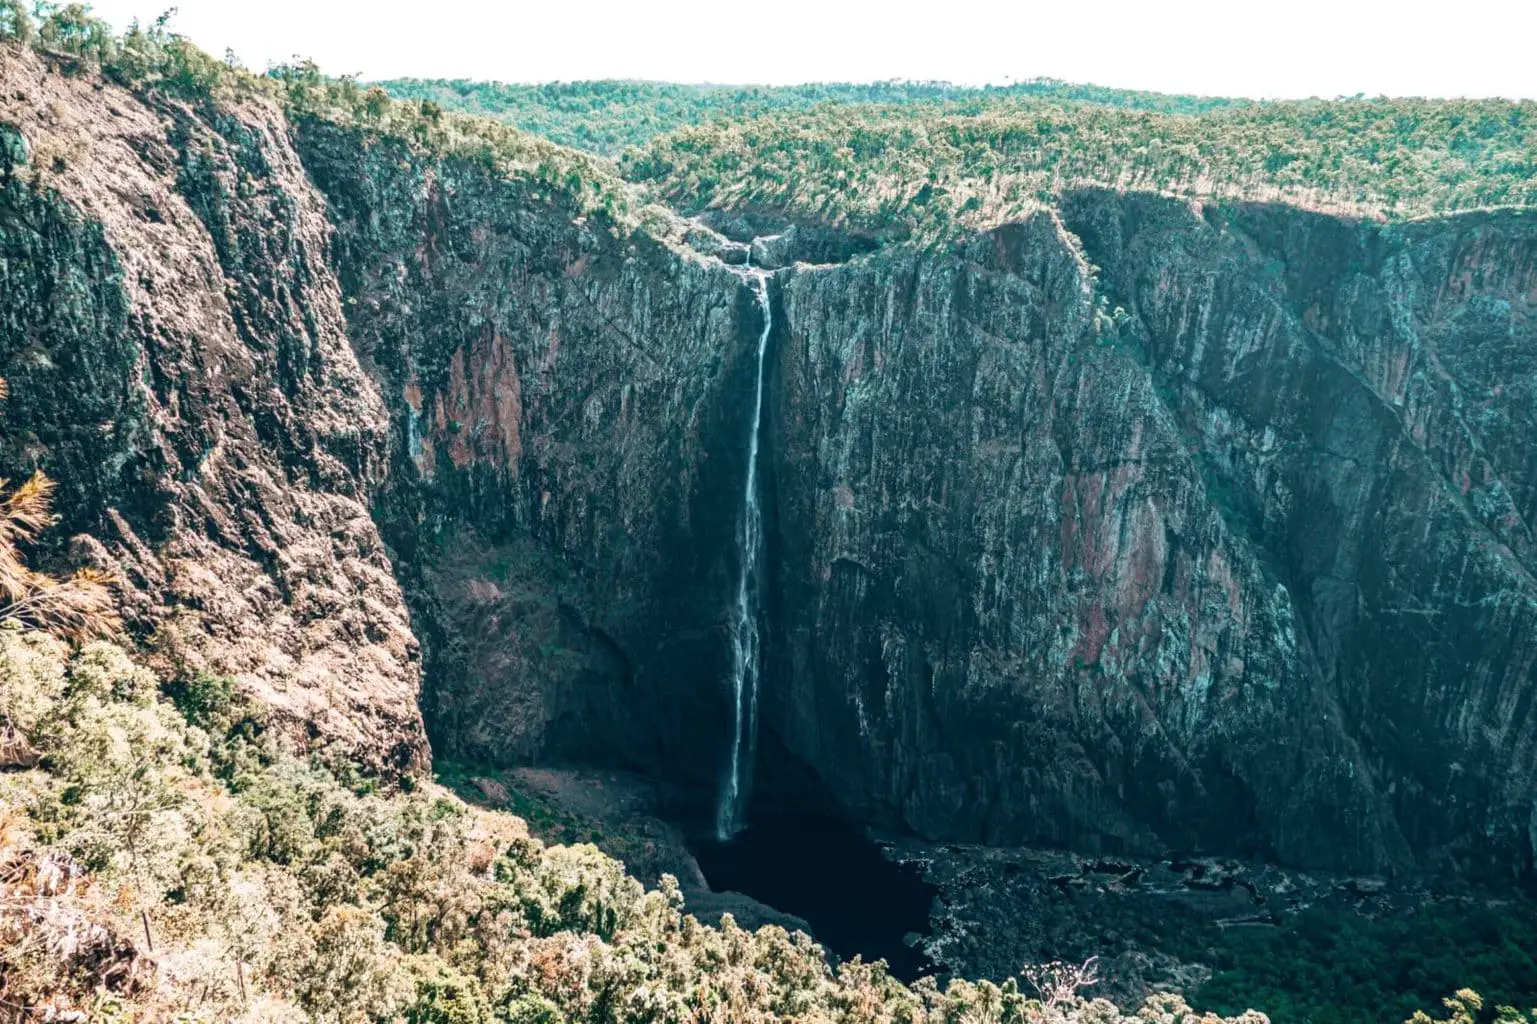 Wallaman Falls near Townsville